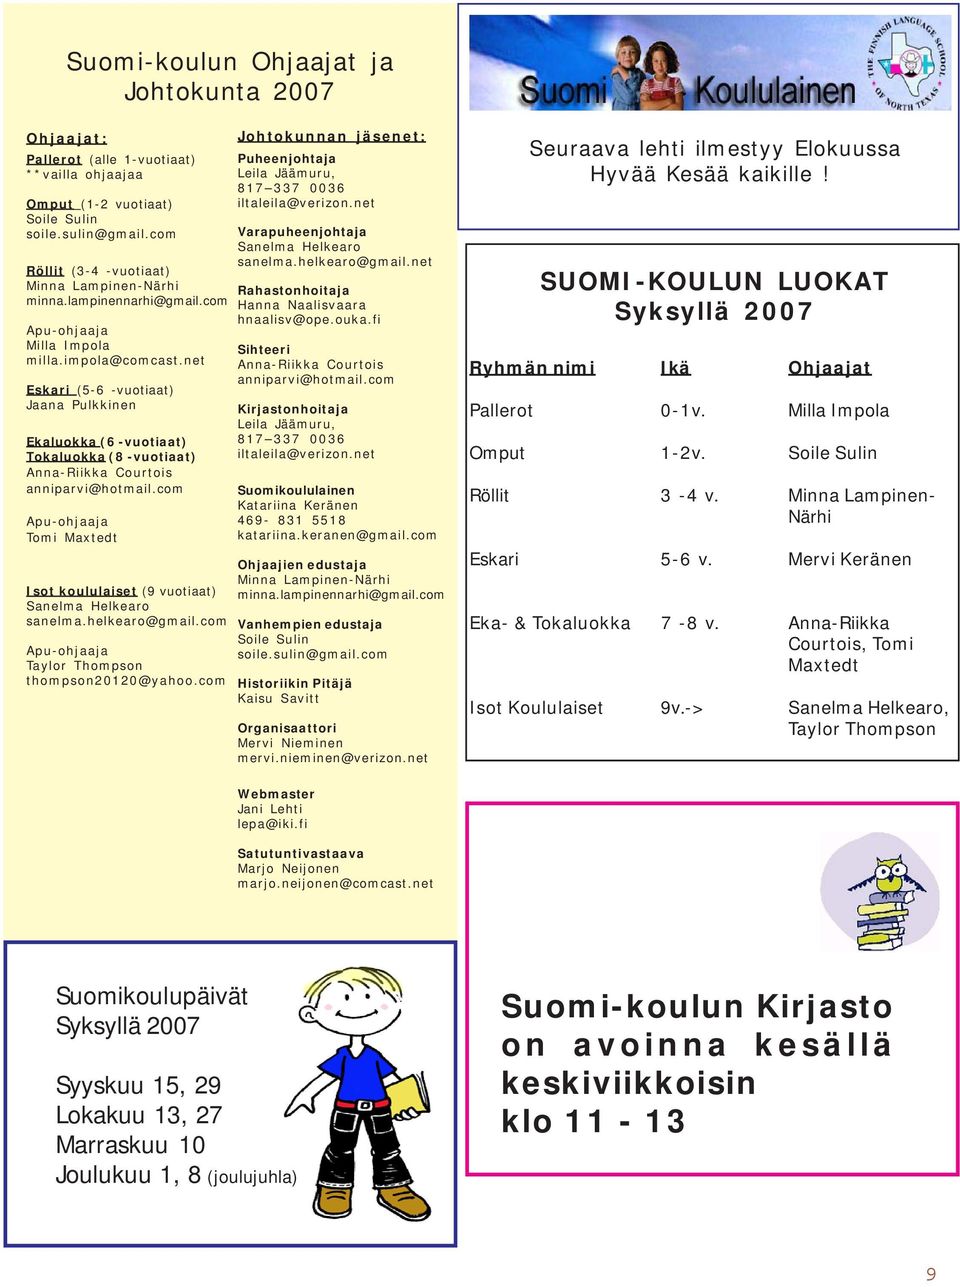 net Eskari (5-6 -vuotiaat) Jaana Pulkkinen Ekaluokka (6 -vuotiaat) Tokaluokka (8 -vuotiaat) Anna-Riikka Courtois anniparvi@hotmail.